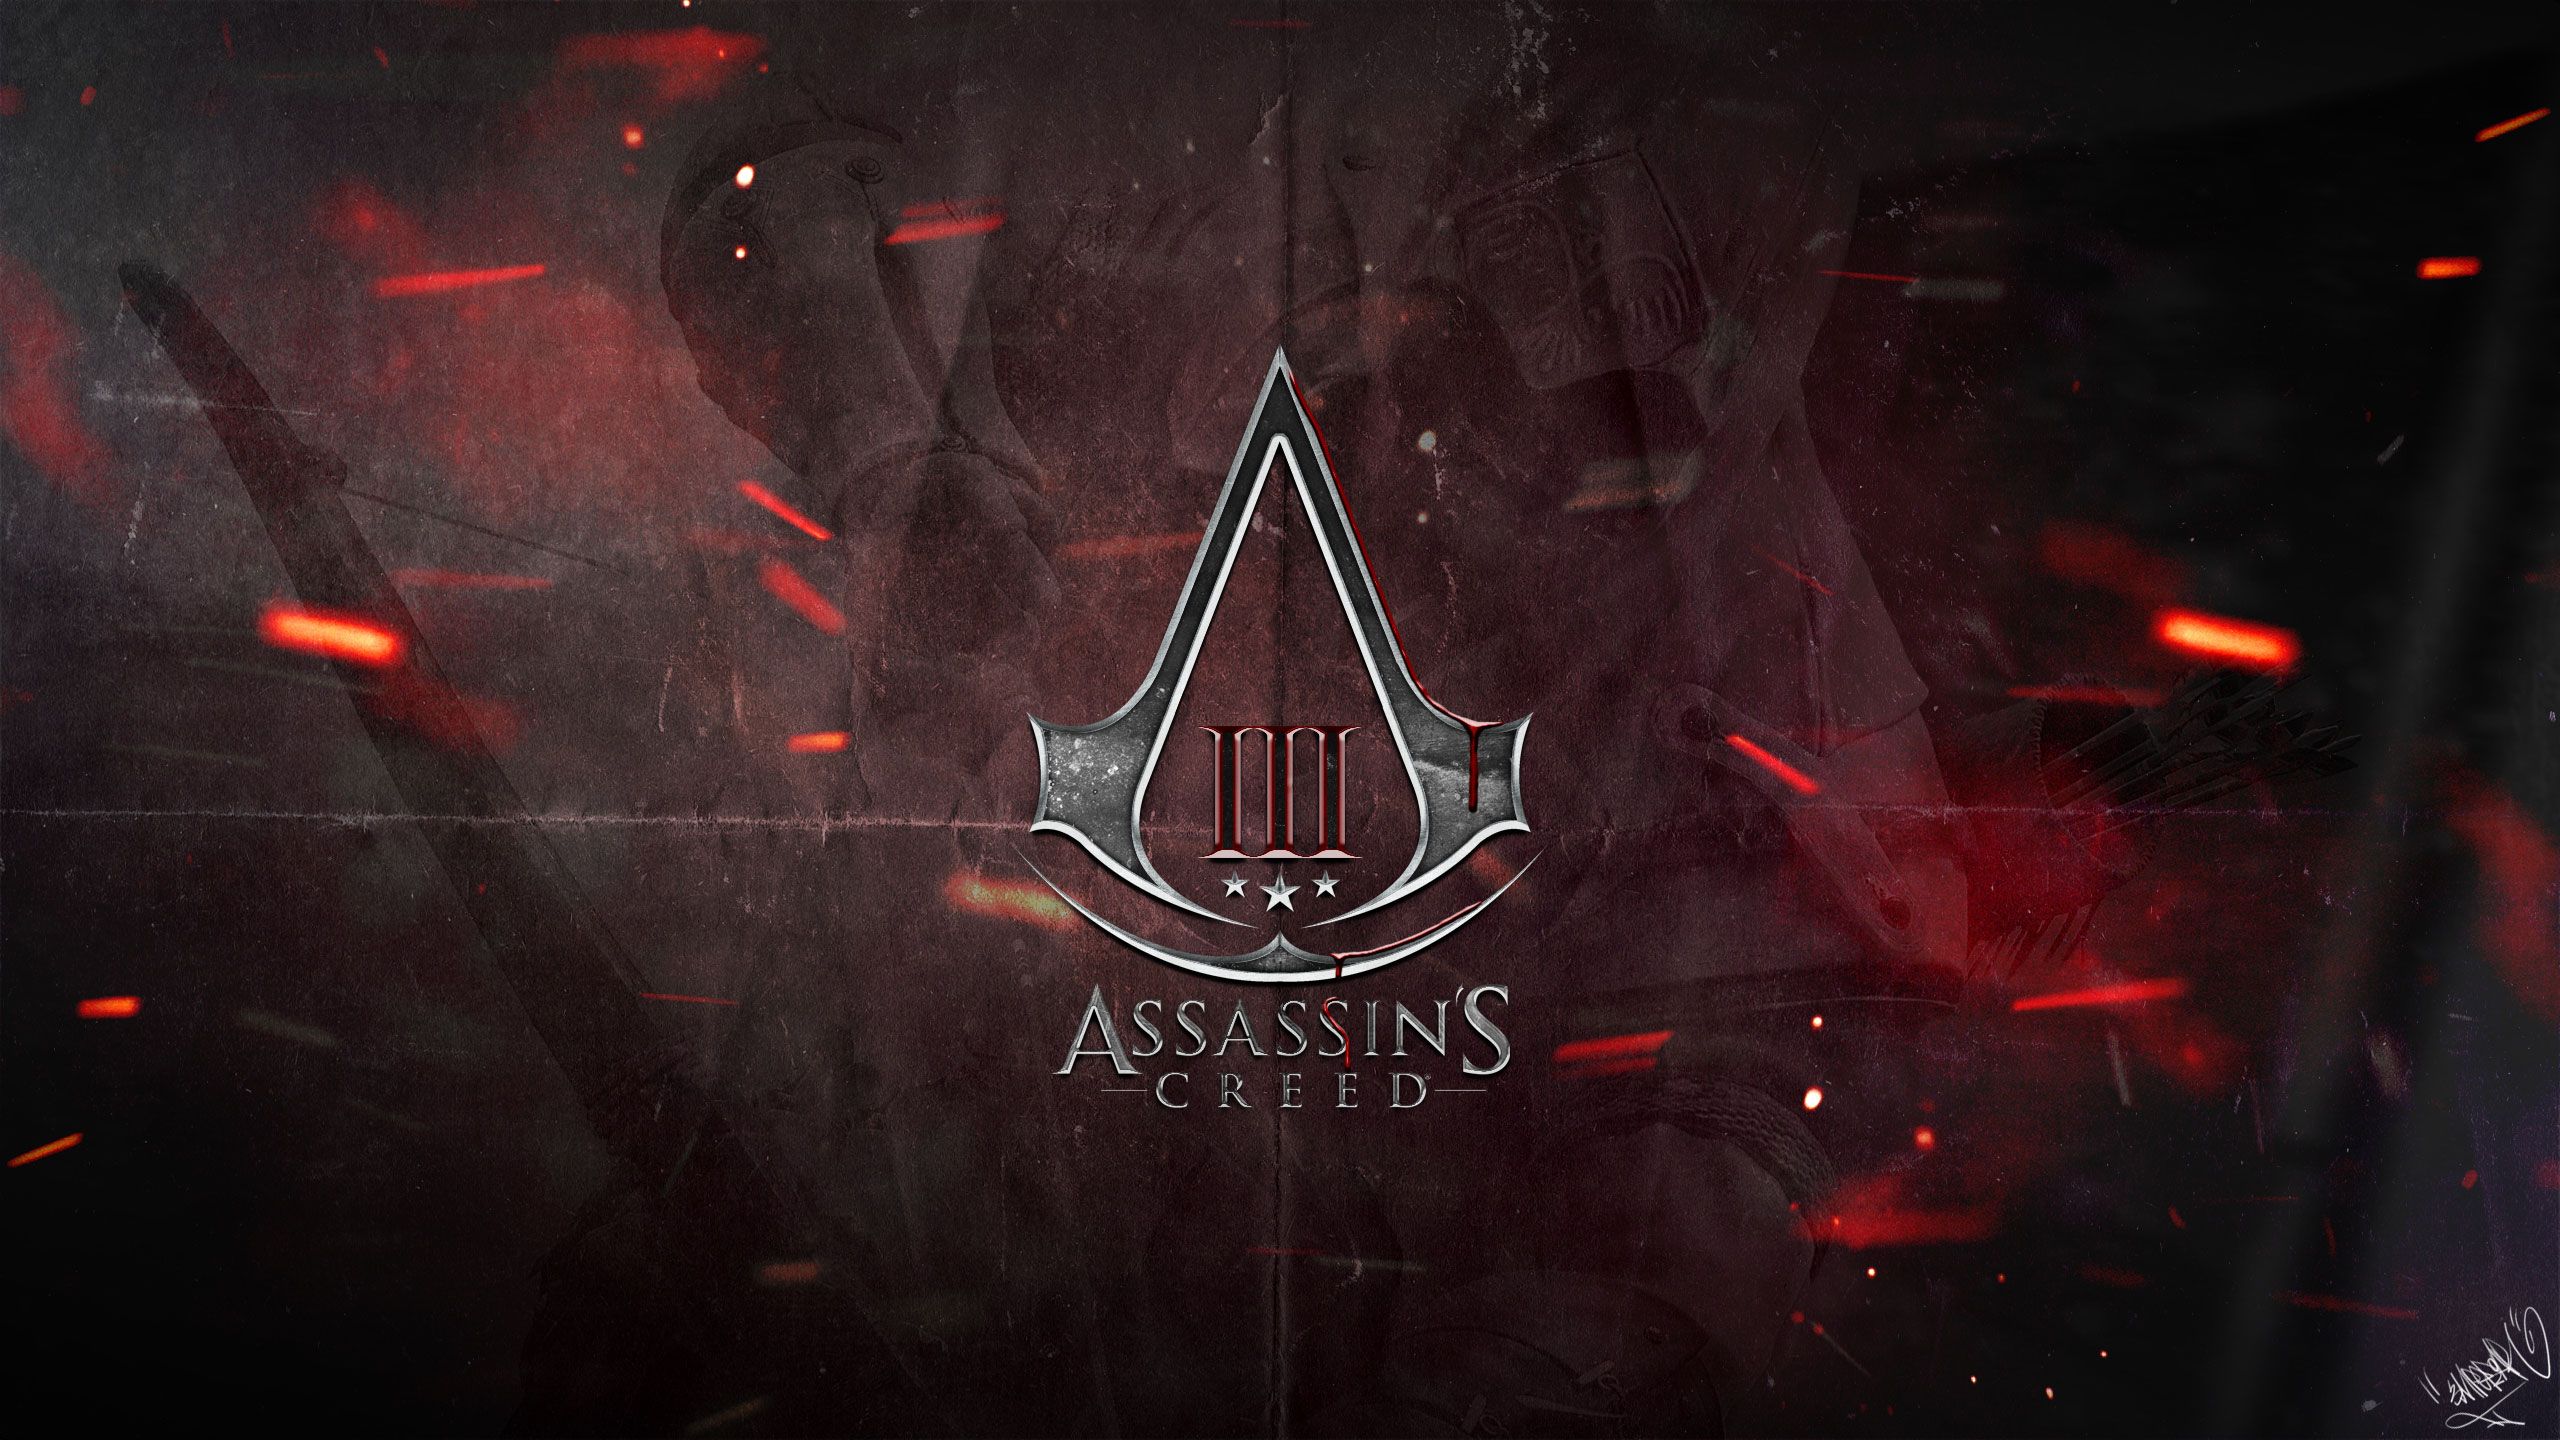 Assassins Creed 3 - The Assassins Wallpaper 32112849 - Fanpop